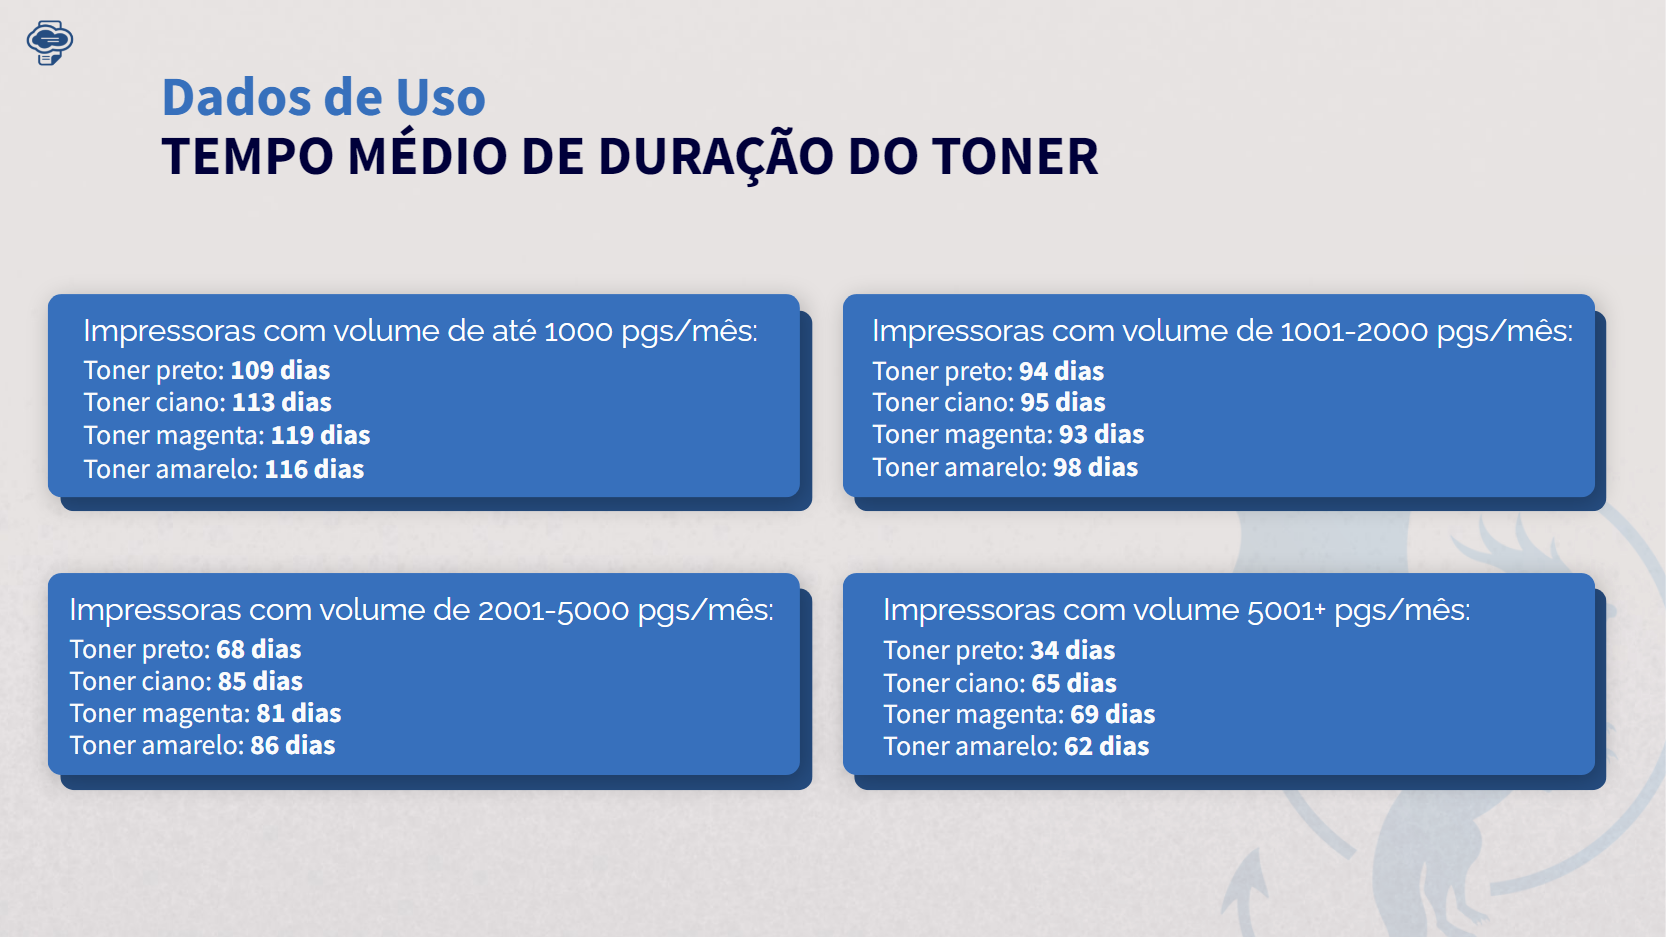 Dados de Uso - Tempo Médio de Duração do Toner, referente ao Dossiê do Outsourcing de Impressão 2021-2022.